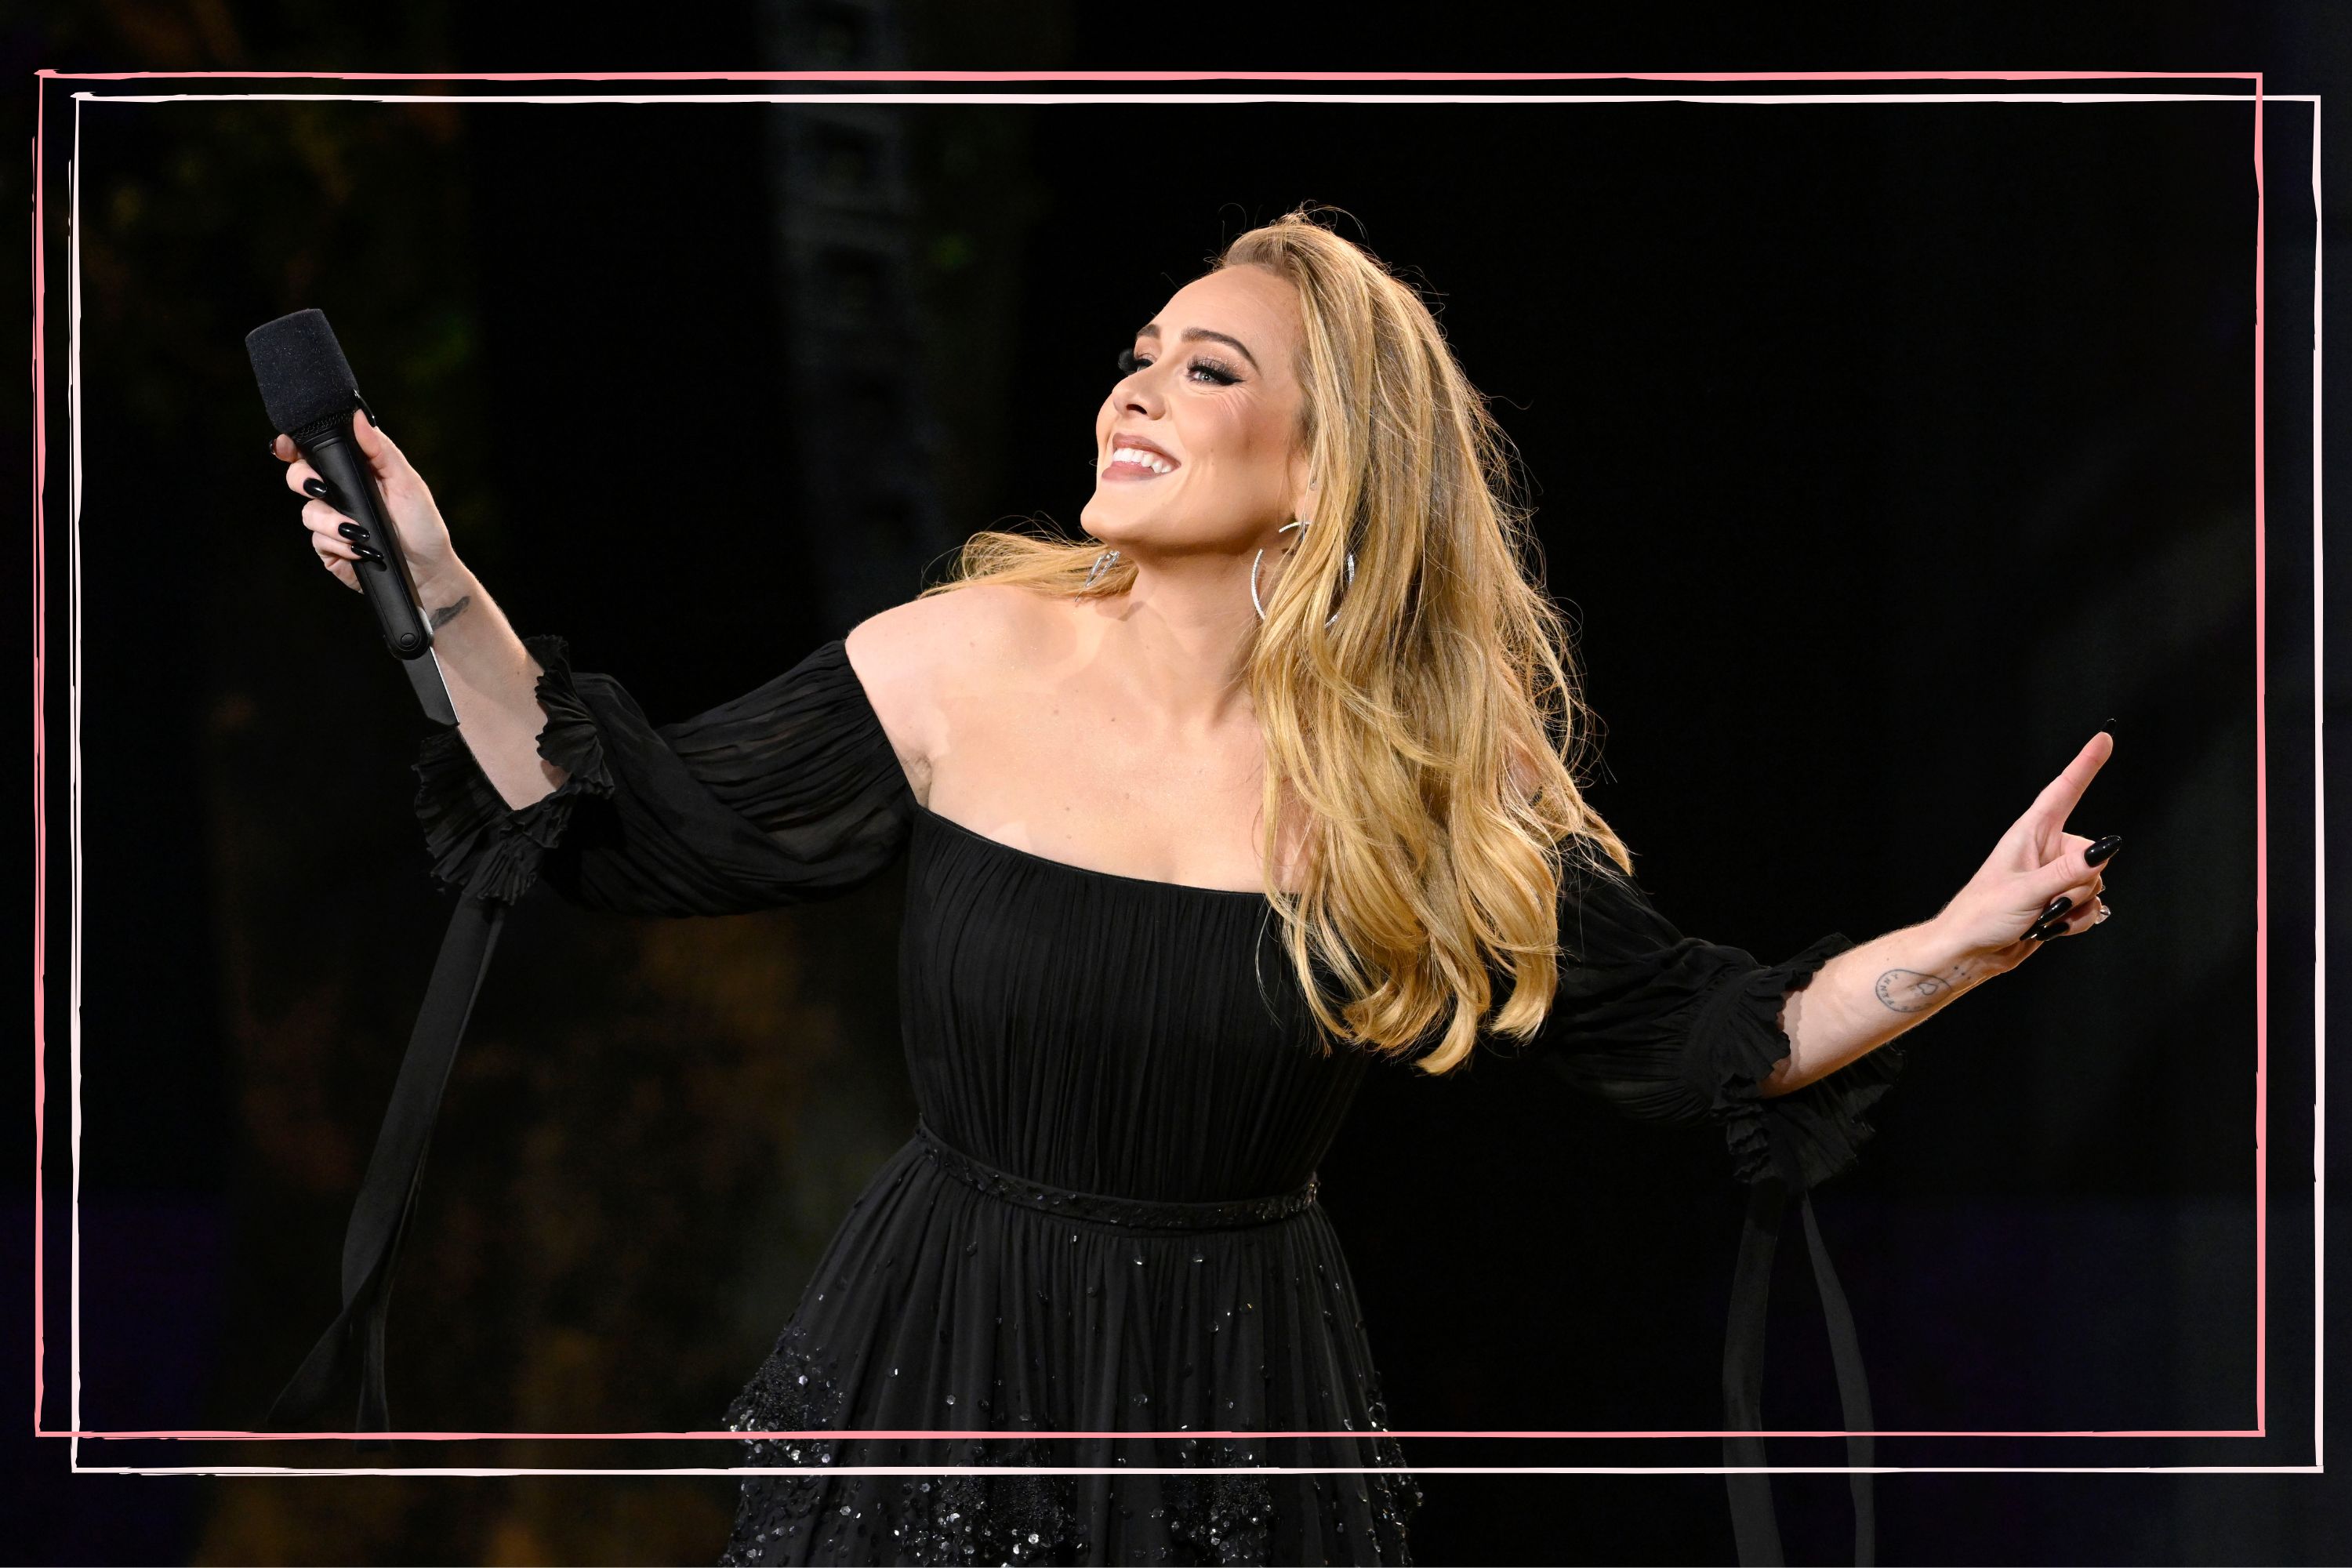 Adele Online - Em entrevista Adele diz que o Brasil será o